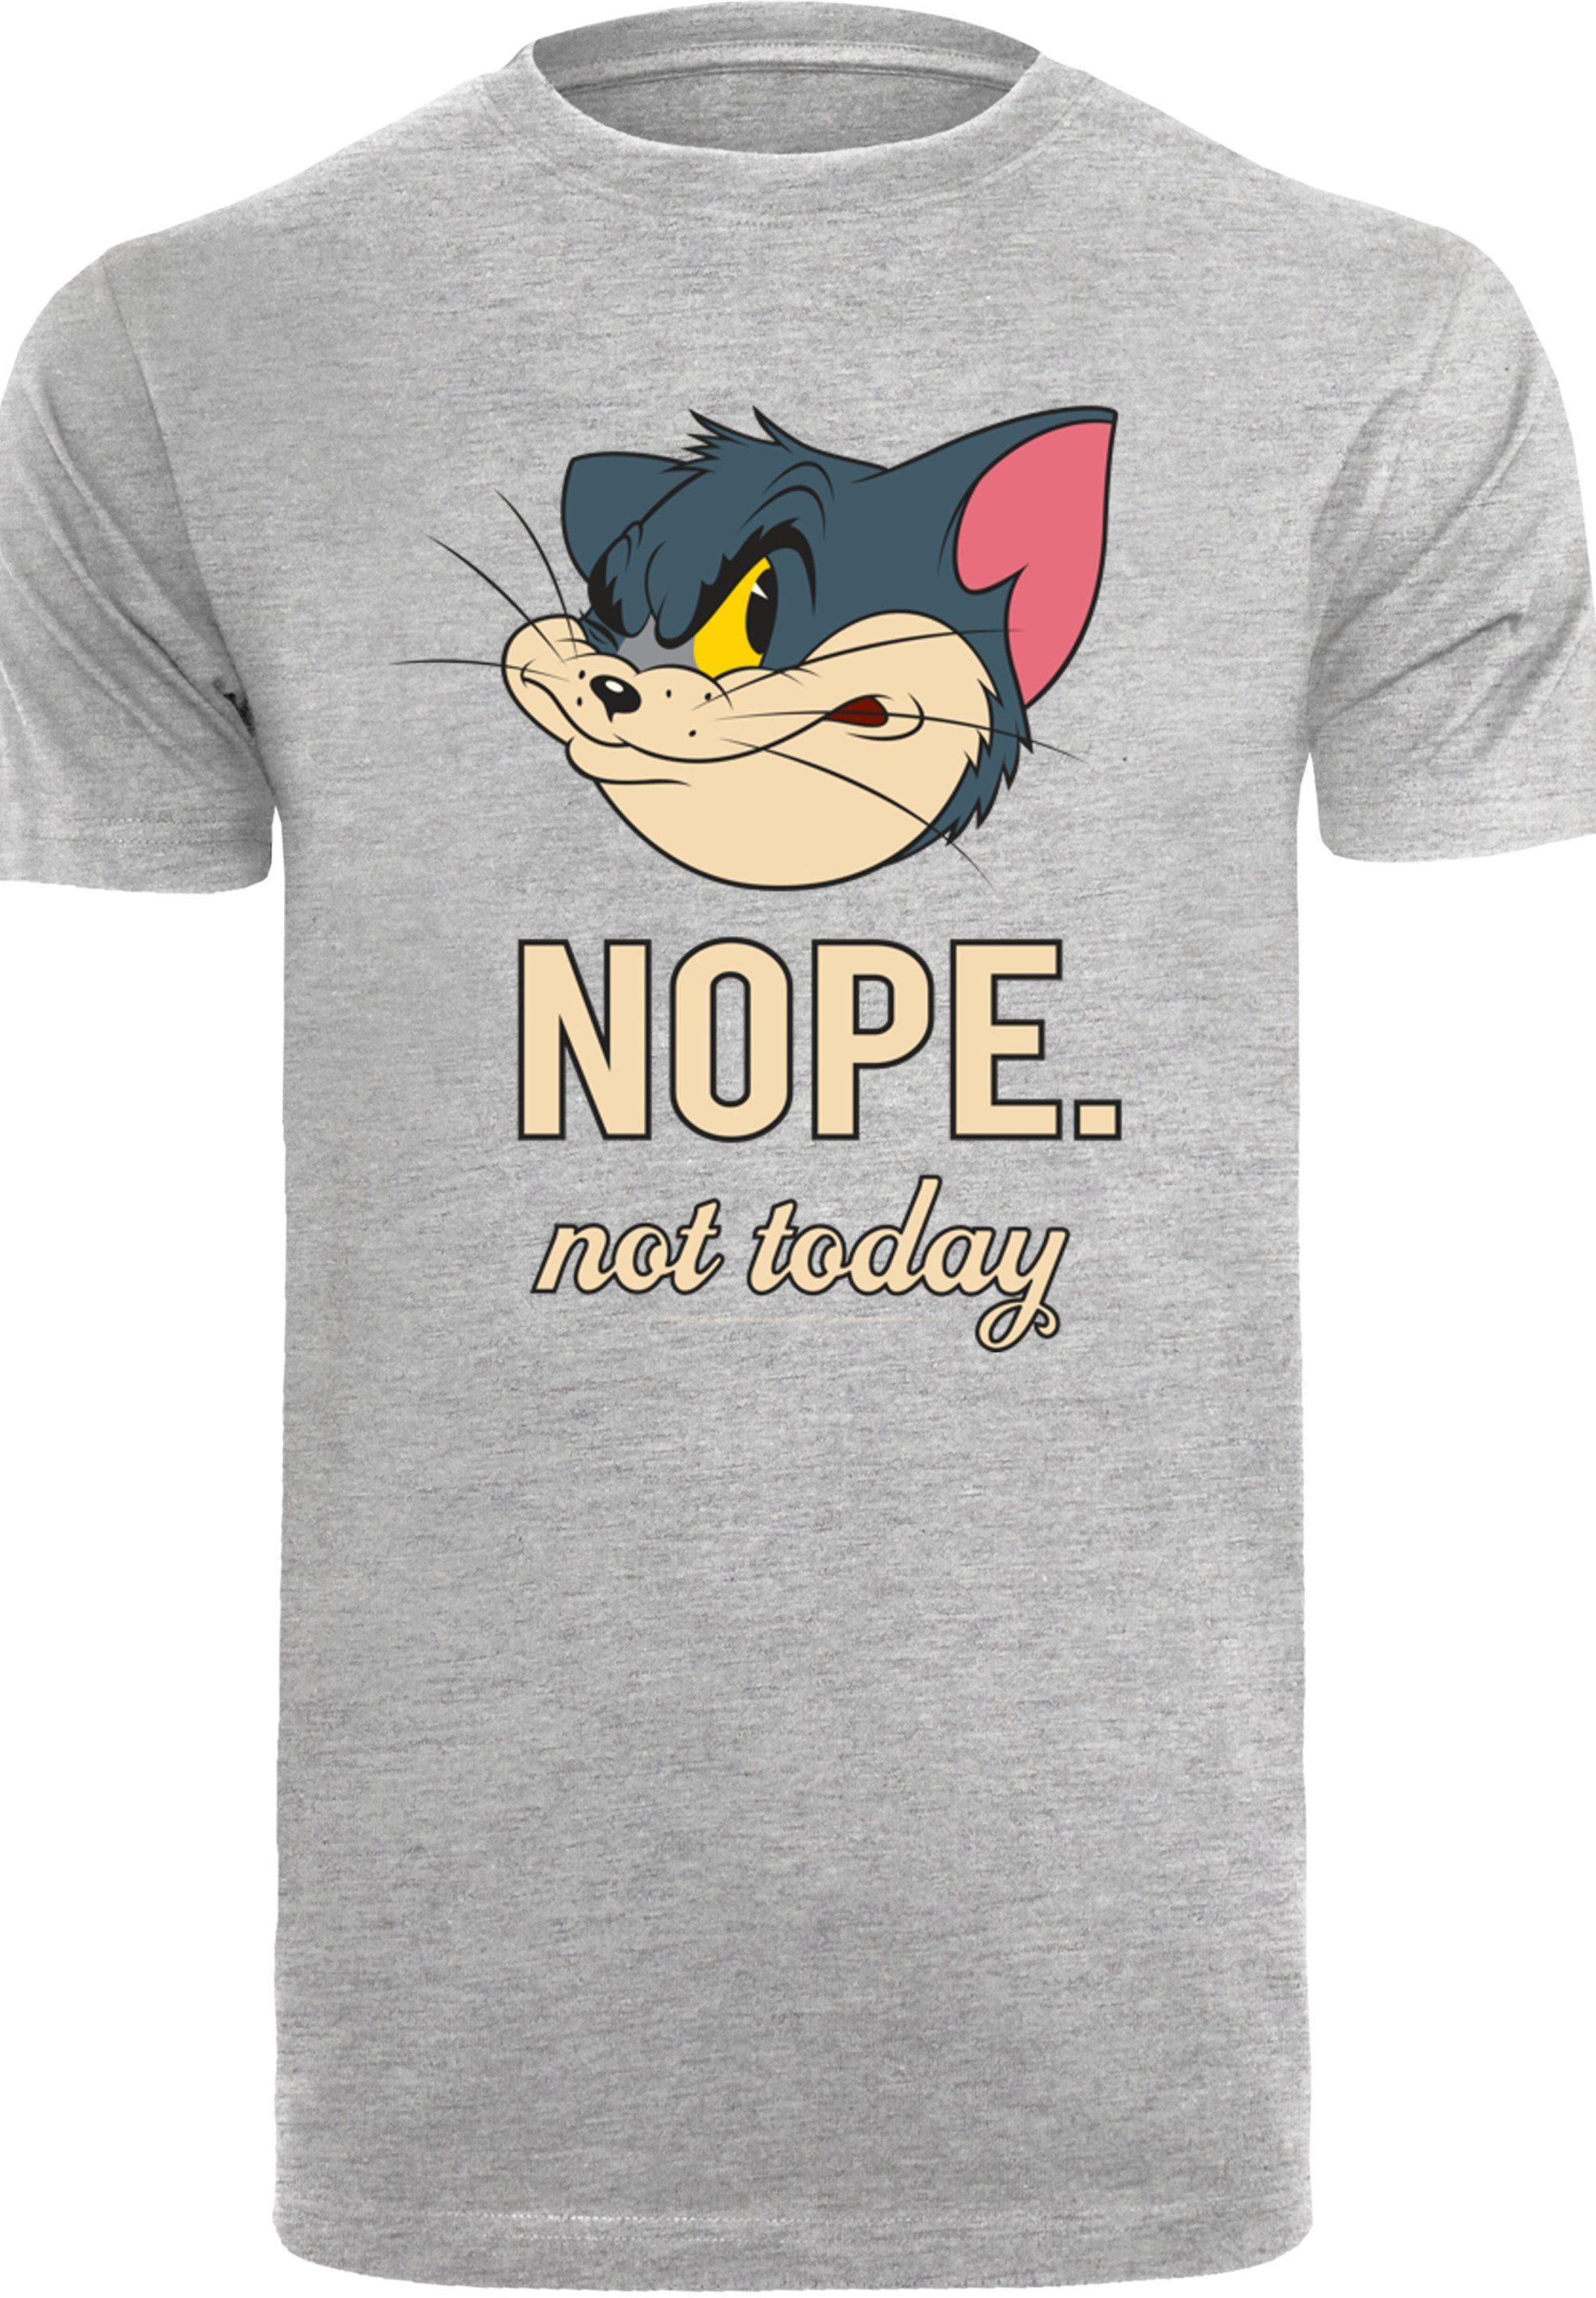 weicher Not Herren,Premium Tom Jerry mit Baumwollstoff T-Shirt F4NT4STIC Merch,Regular-Fit,Basic,Bedruckt, und Today hohem Sehr Nope Tragekomfort